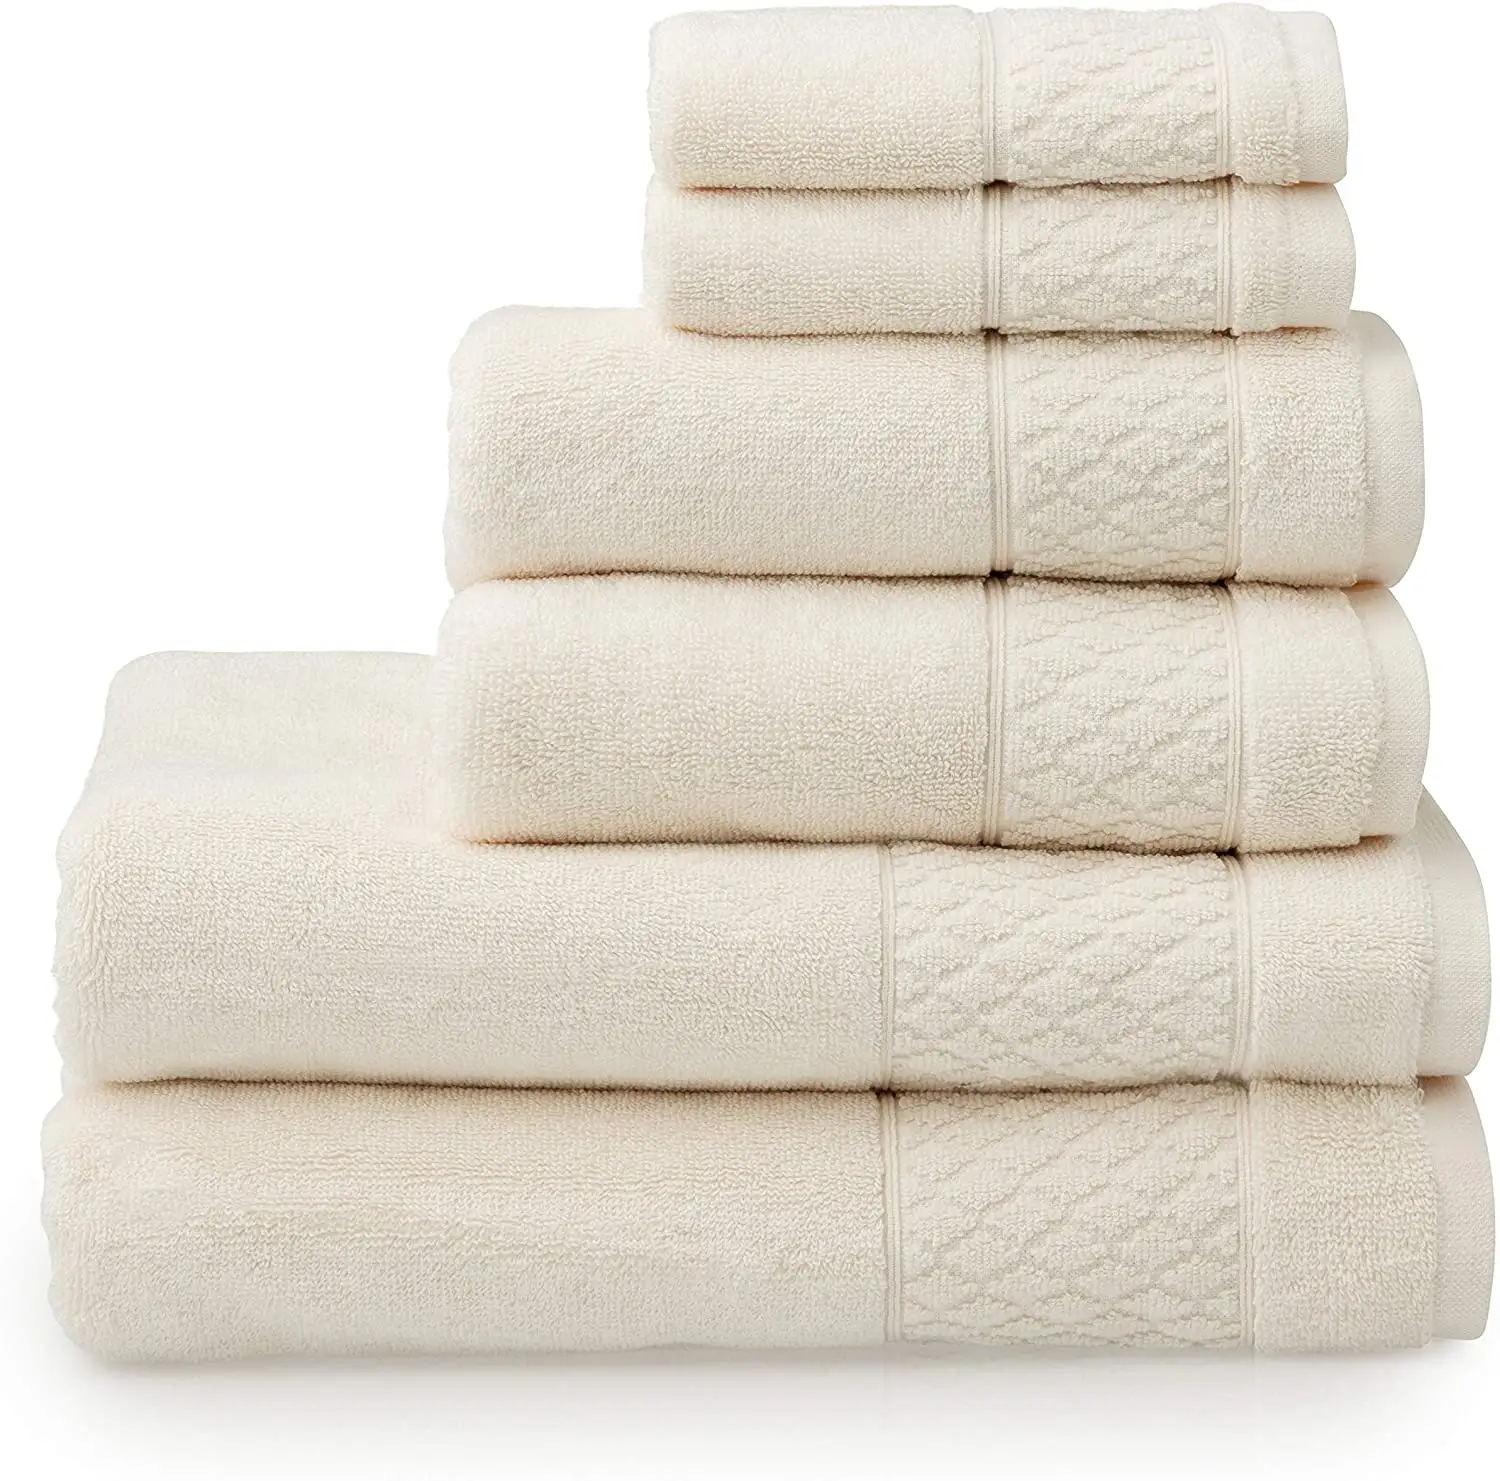 OEM maßge schneiderte umwelt freundliche Bio-Baumwolle Luxus billige bequeme Handtuch-Sets Marke Badet ücher